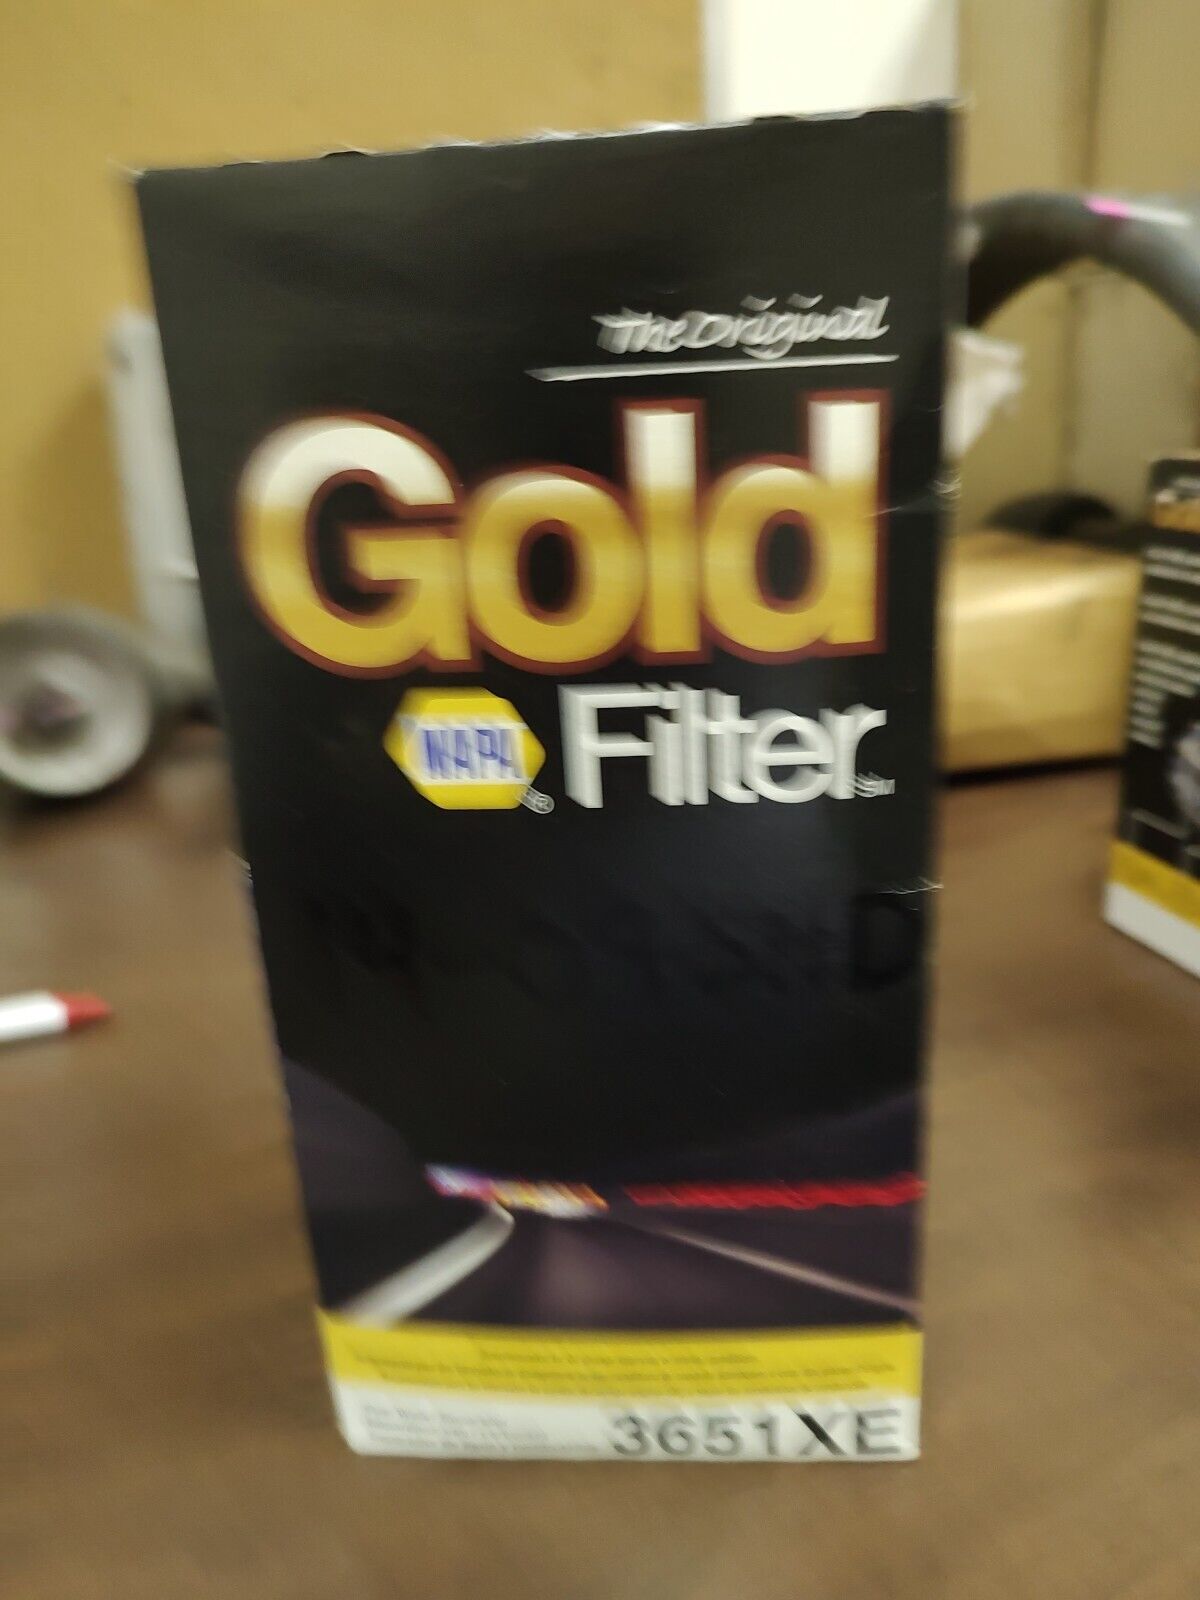 NAPA Gold Filter: 3651XE